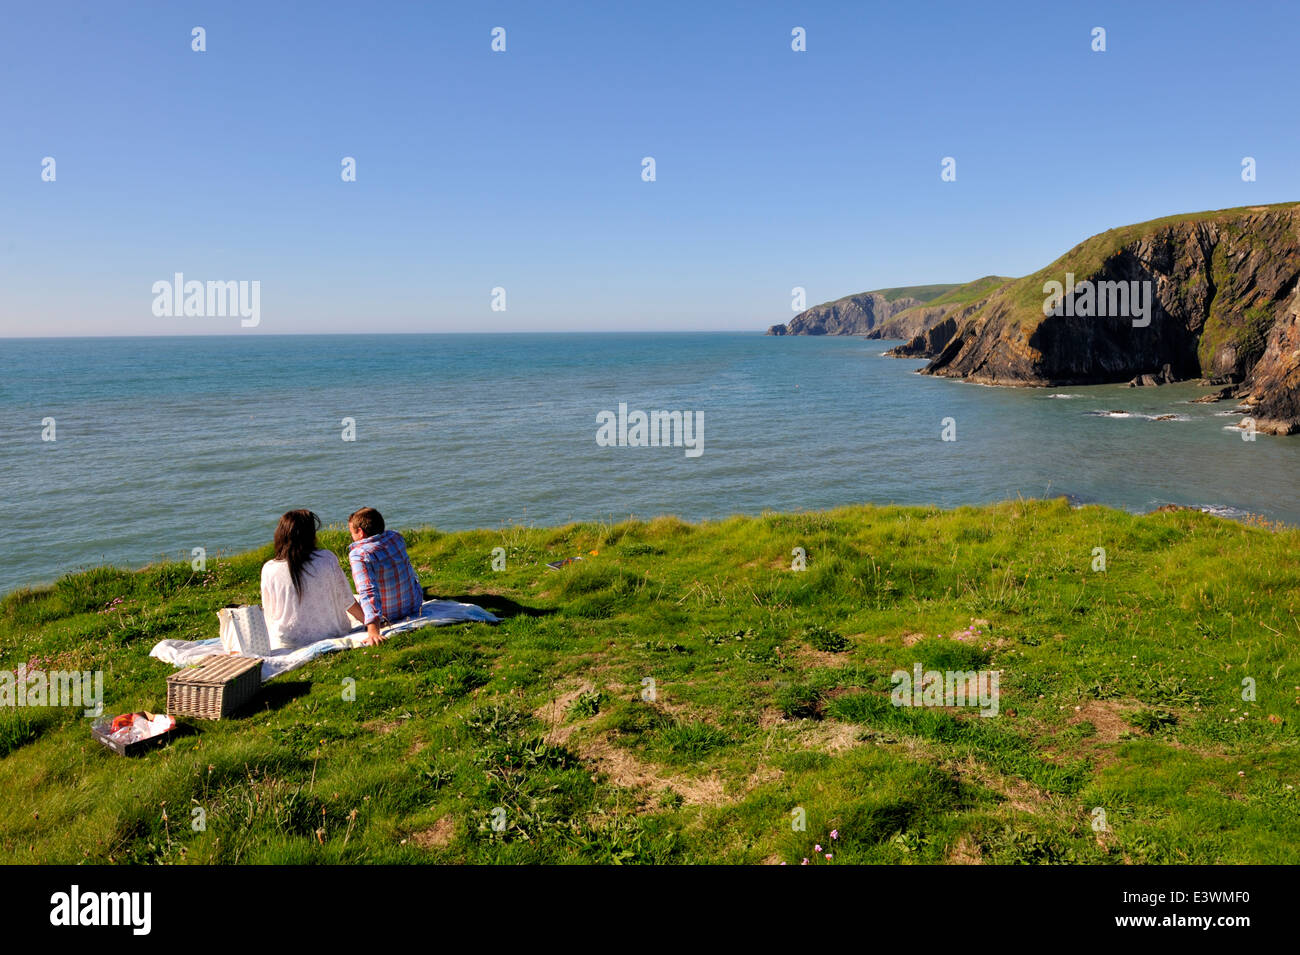 Pique-nique sur champ vert le long de la côte du Pembrokeshire, Pays de Galles de l'ouest. Près de la Baie d'Ceibwr Banque D'Images